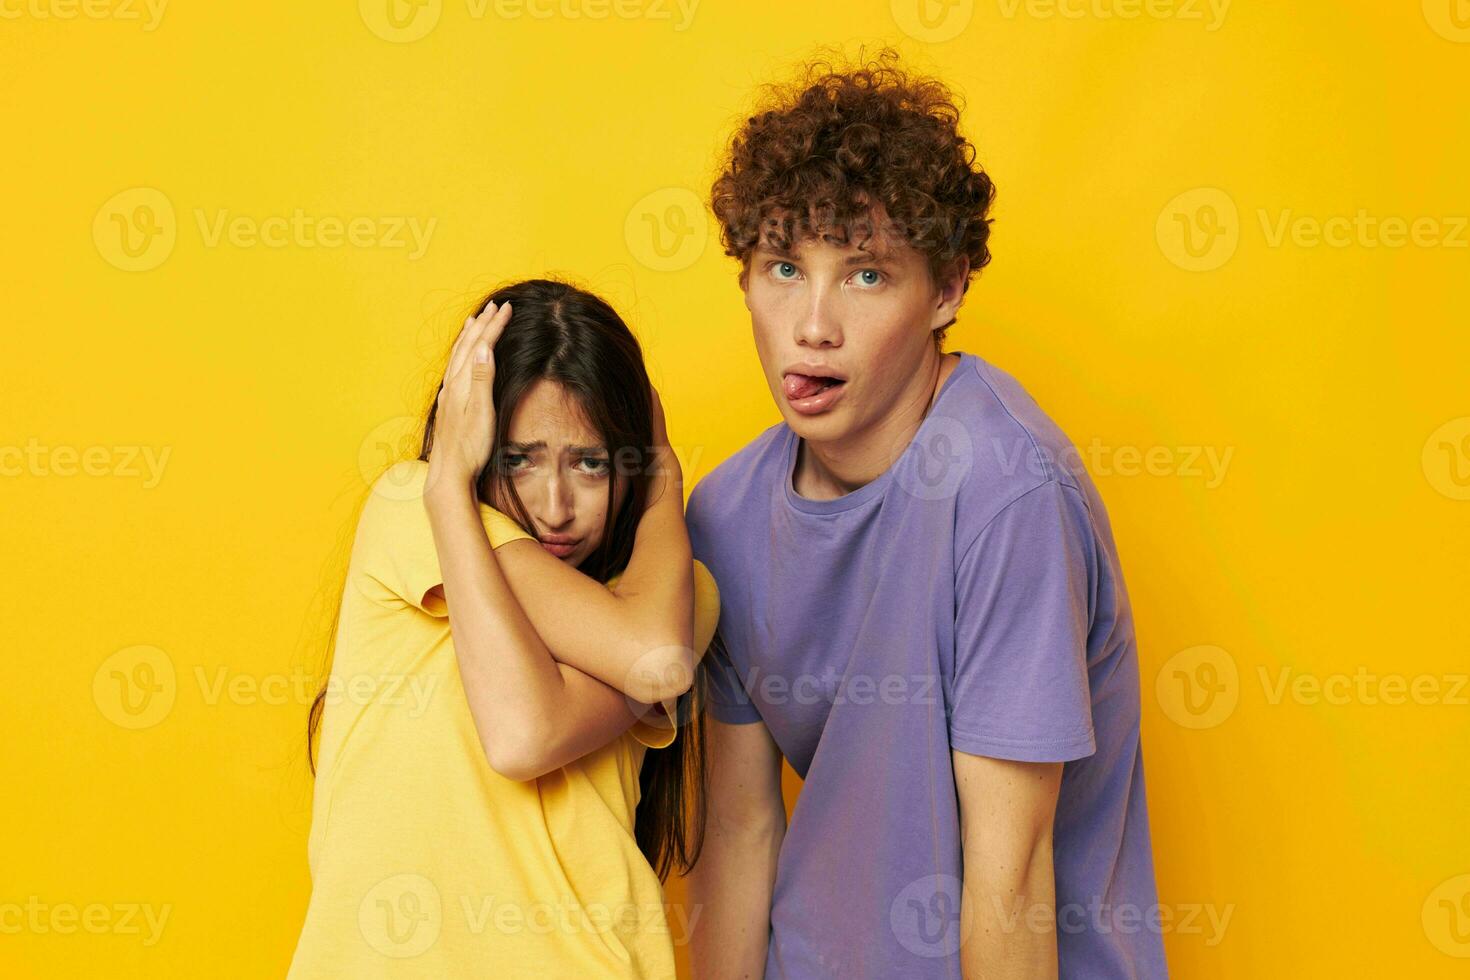 adolescentes casual roupas posando emoções palhaçadas isolado fundo inalterado foto